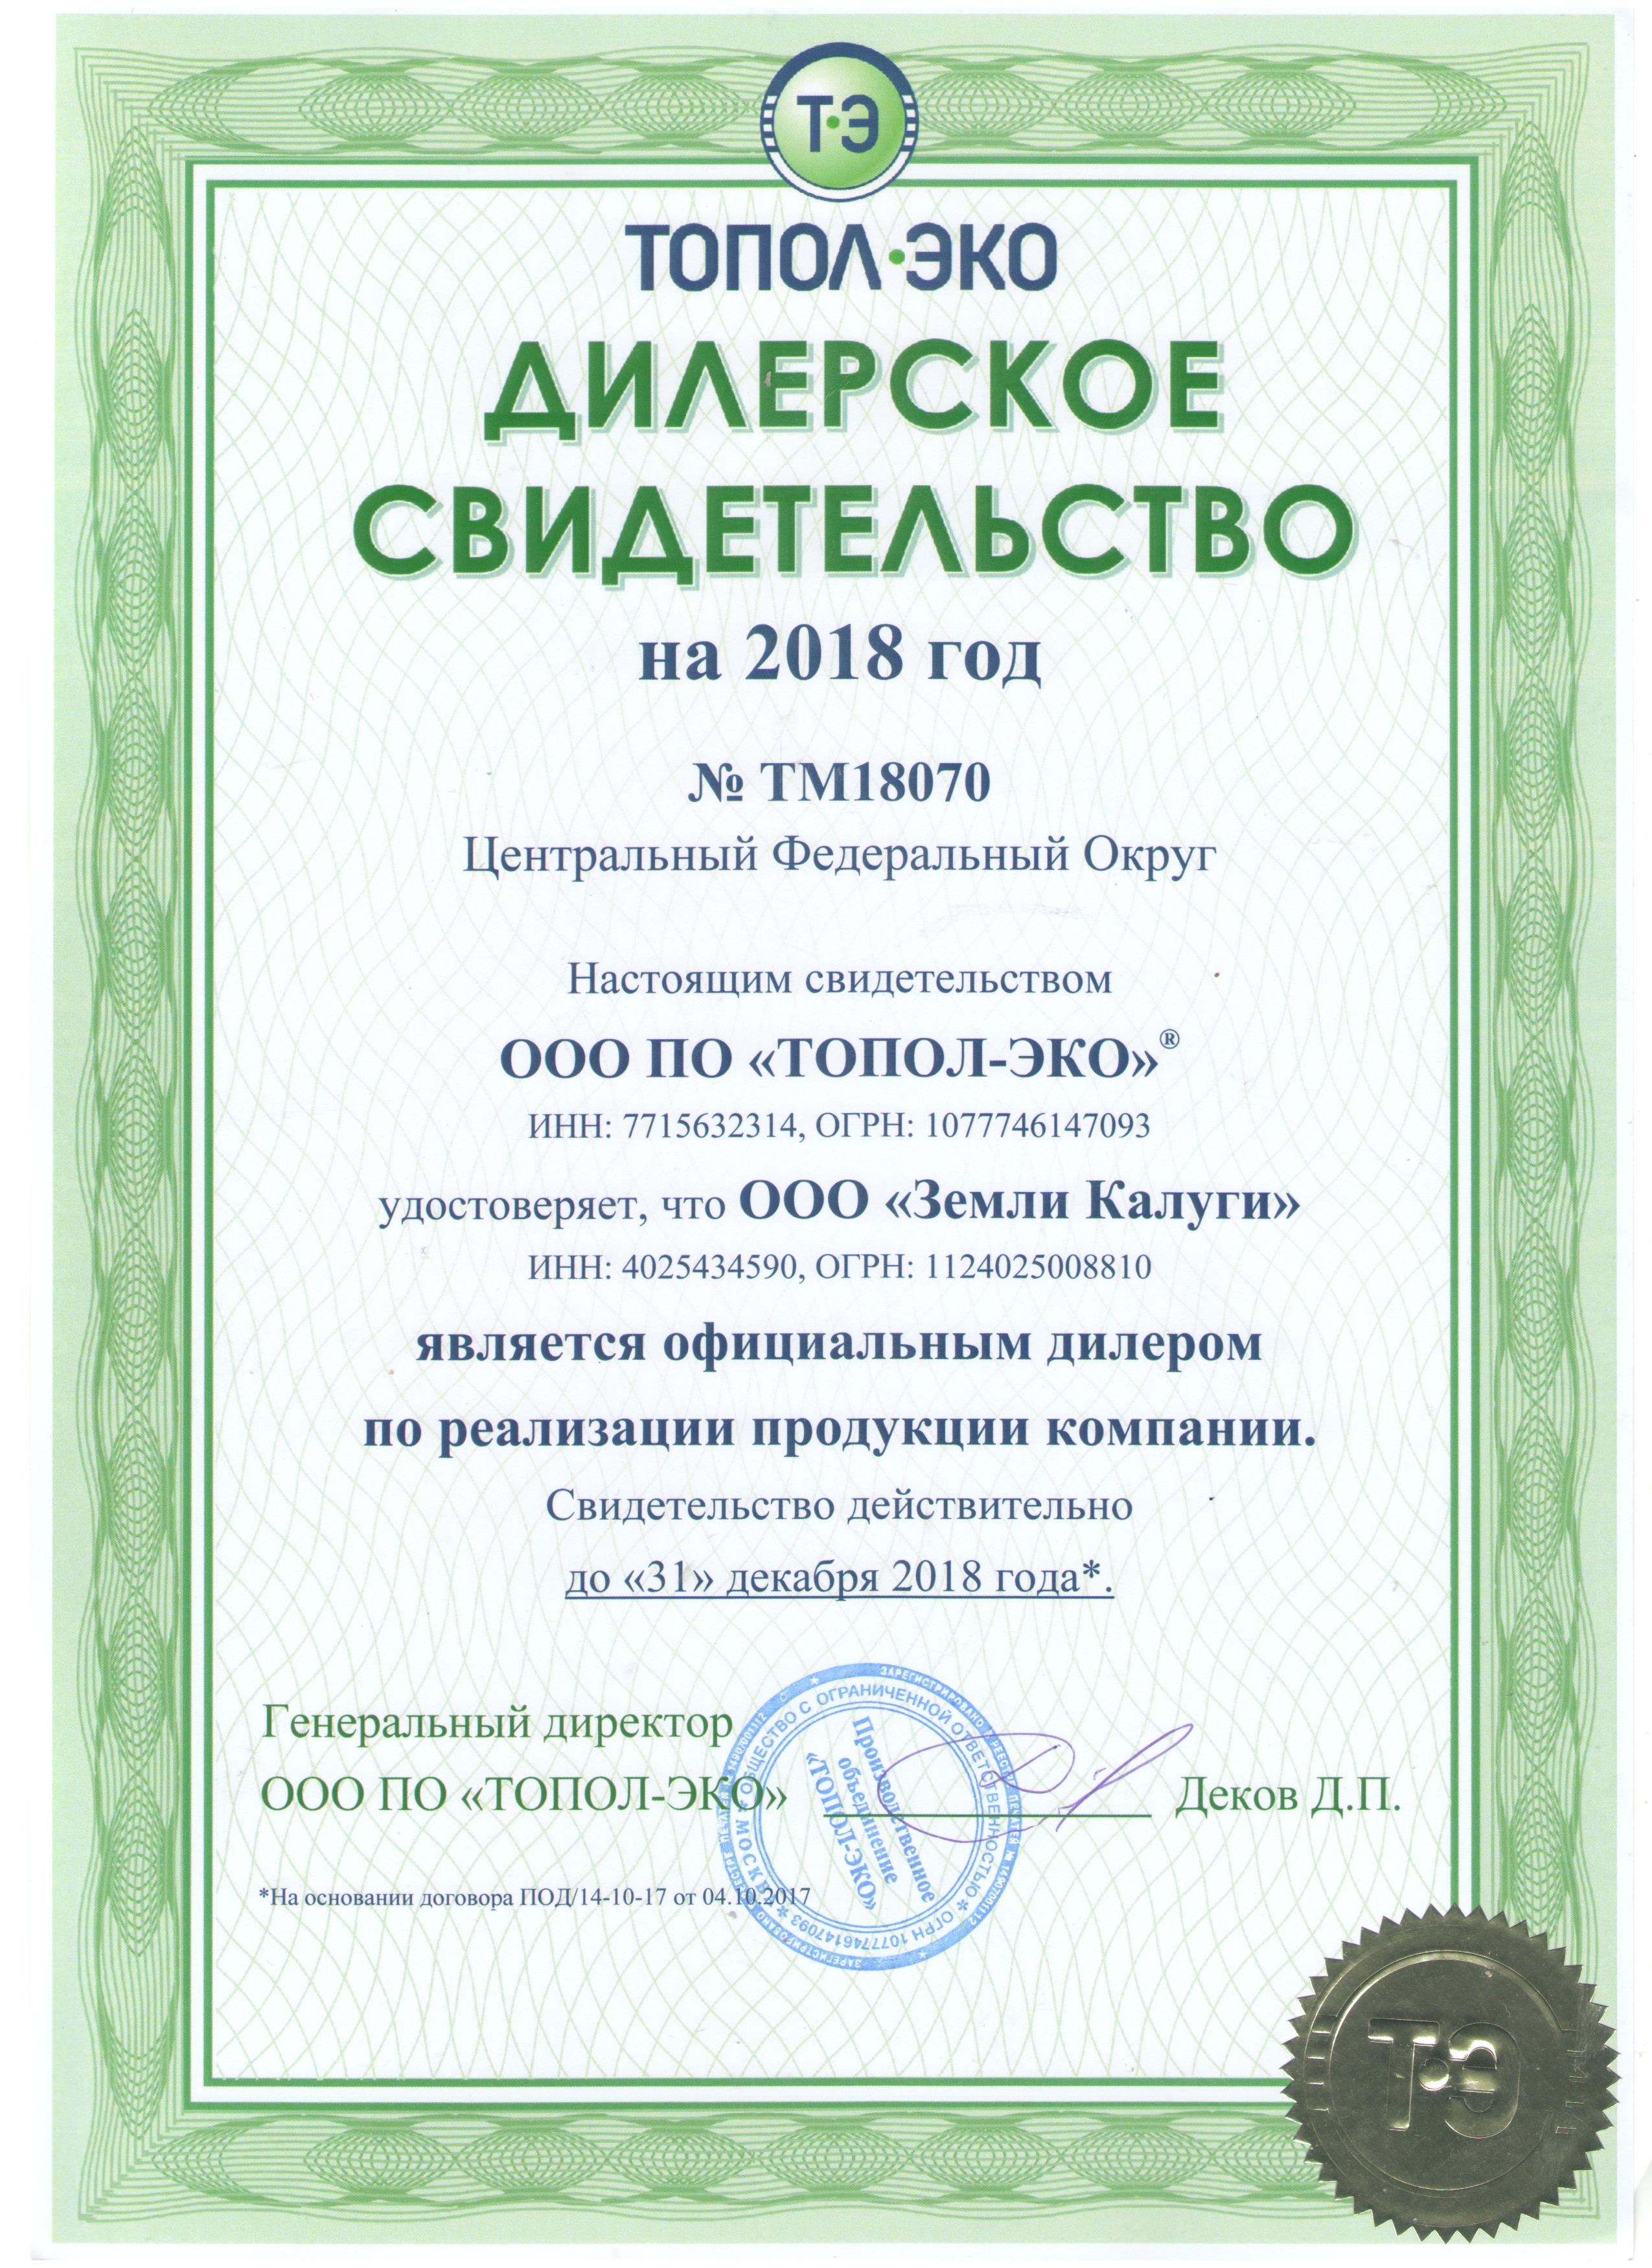 Свидетельство официального дилера от производителя компании ПО "ТОПОЛ-ЭКО" за 2018 год.